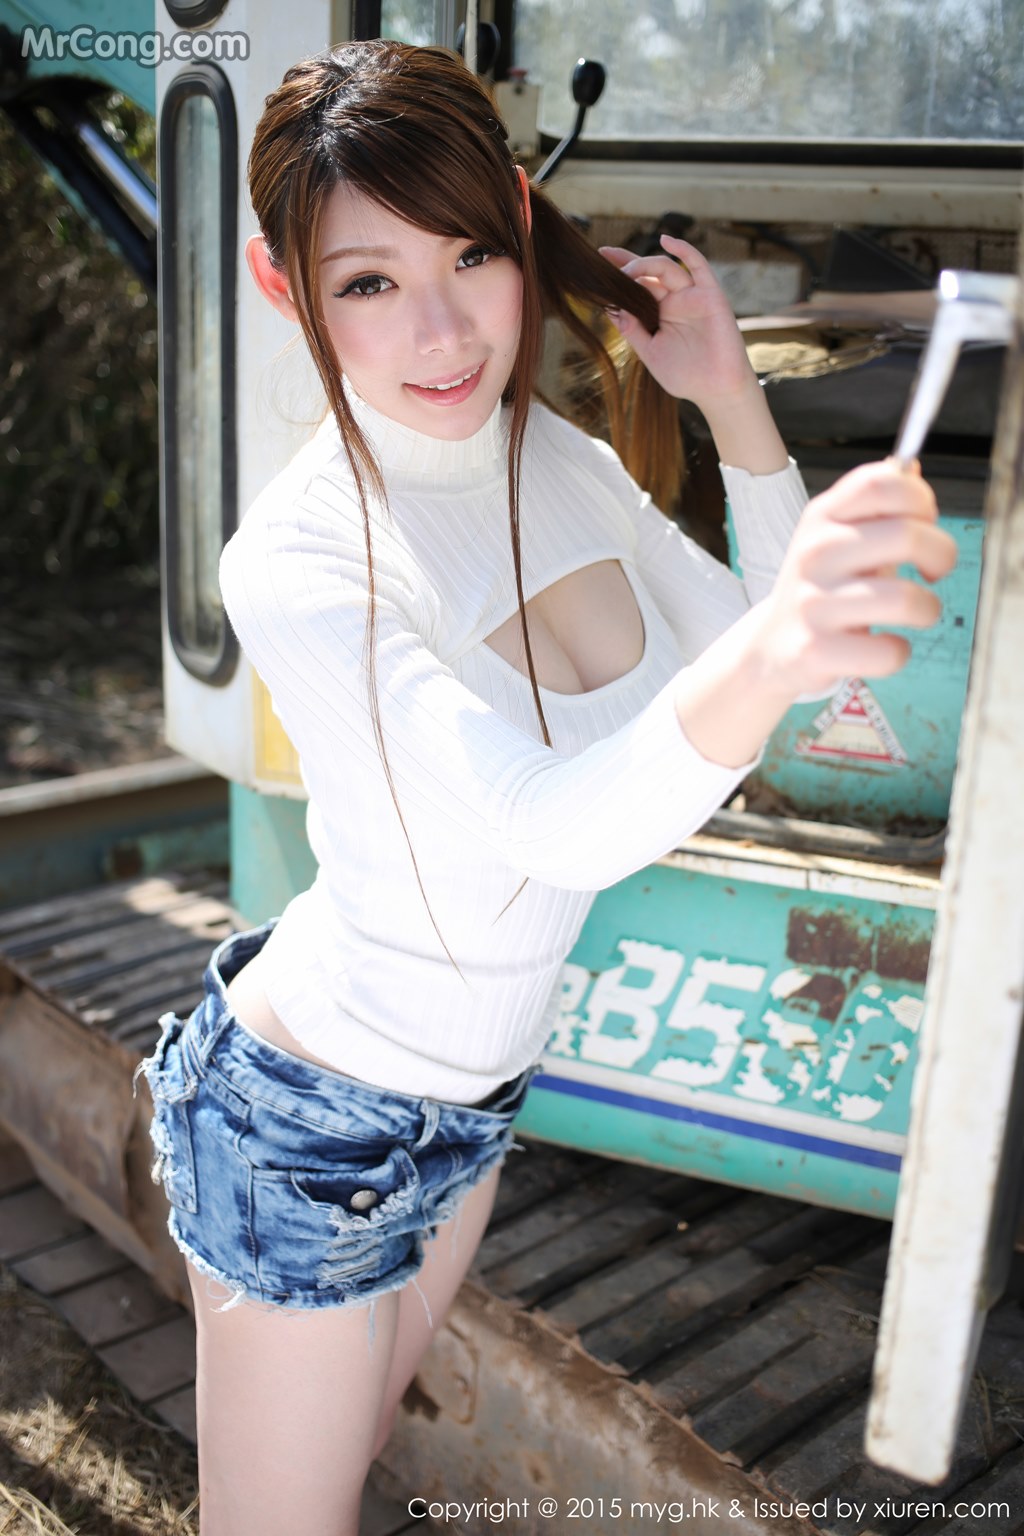 MyGirl Vol.097: Model Mara Jiang (Mara 酱) (61 photos)